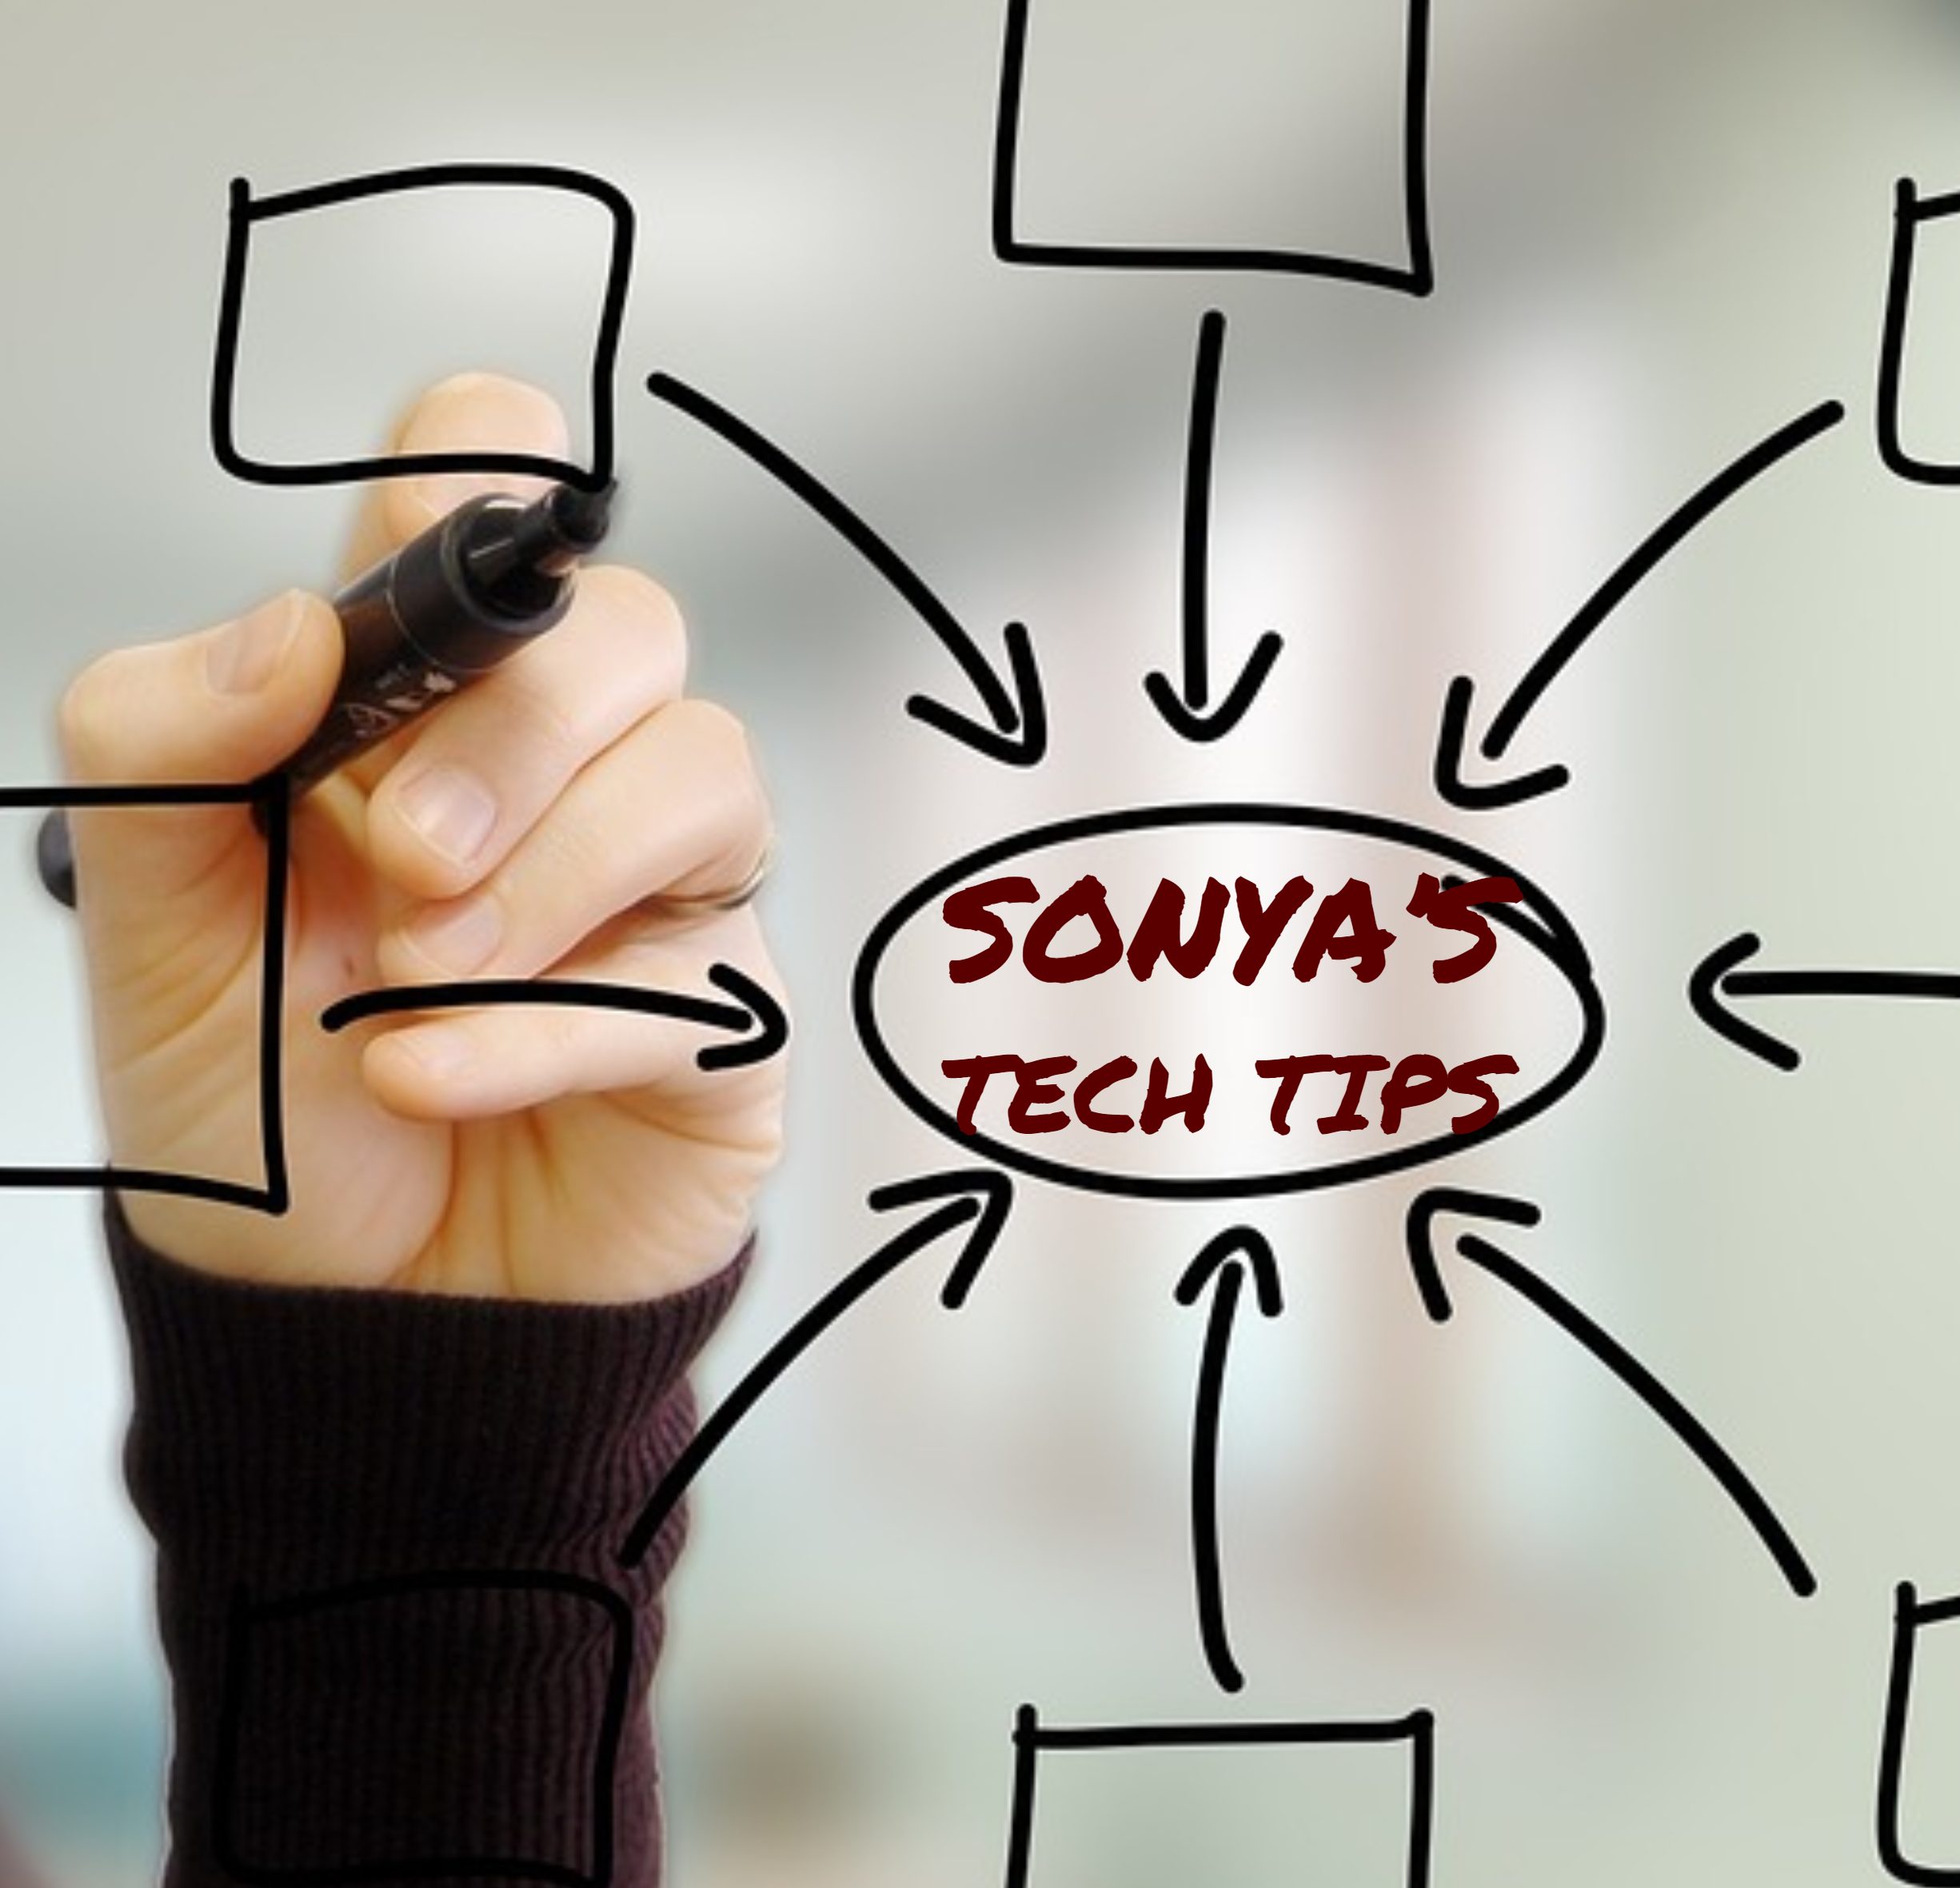 sonyas tech tips e1548192189883 Sonyas Tech Tip ~ Windows 10 Creating Tile Groups